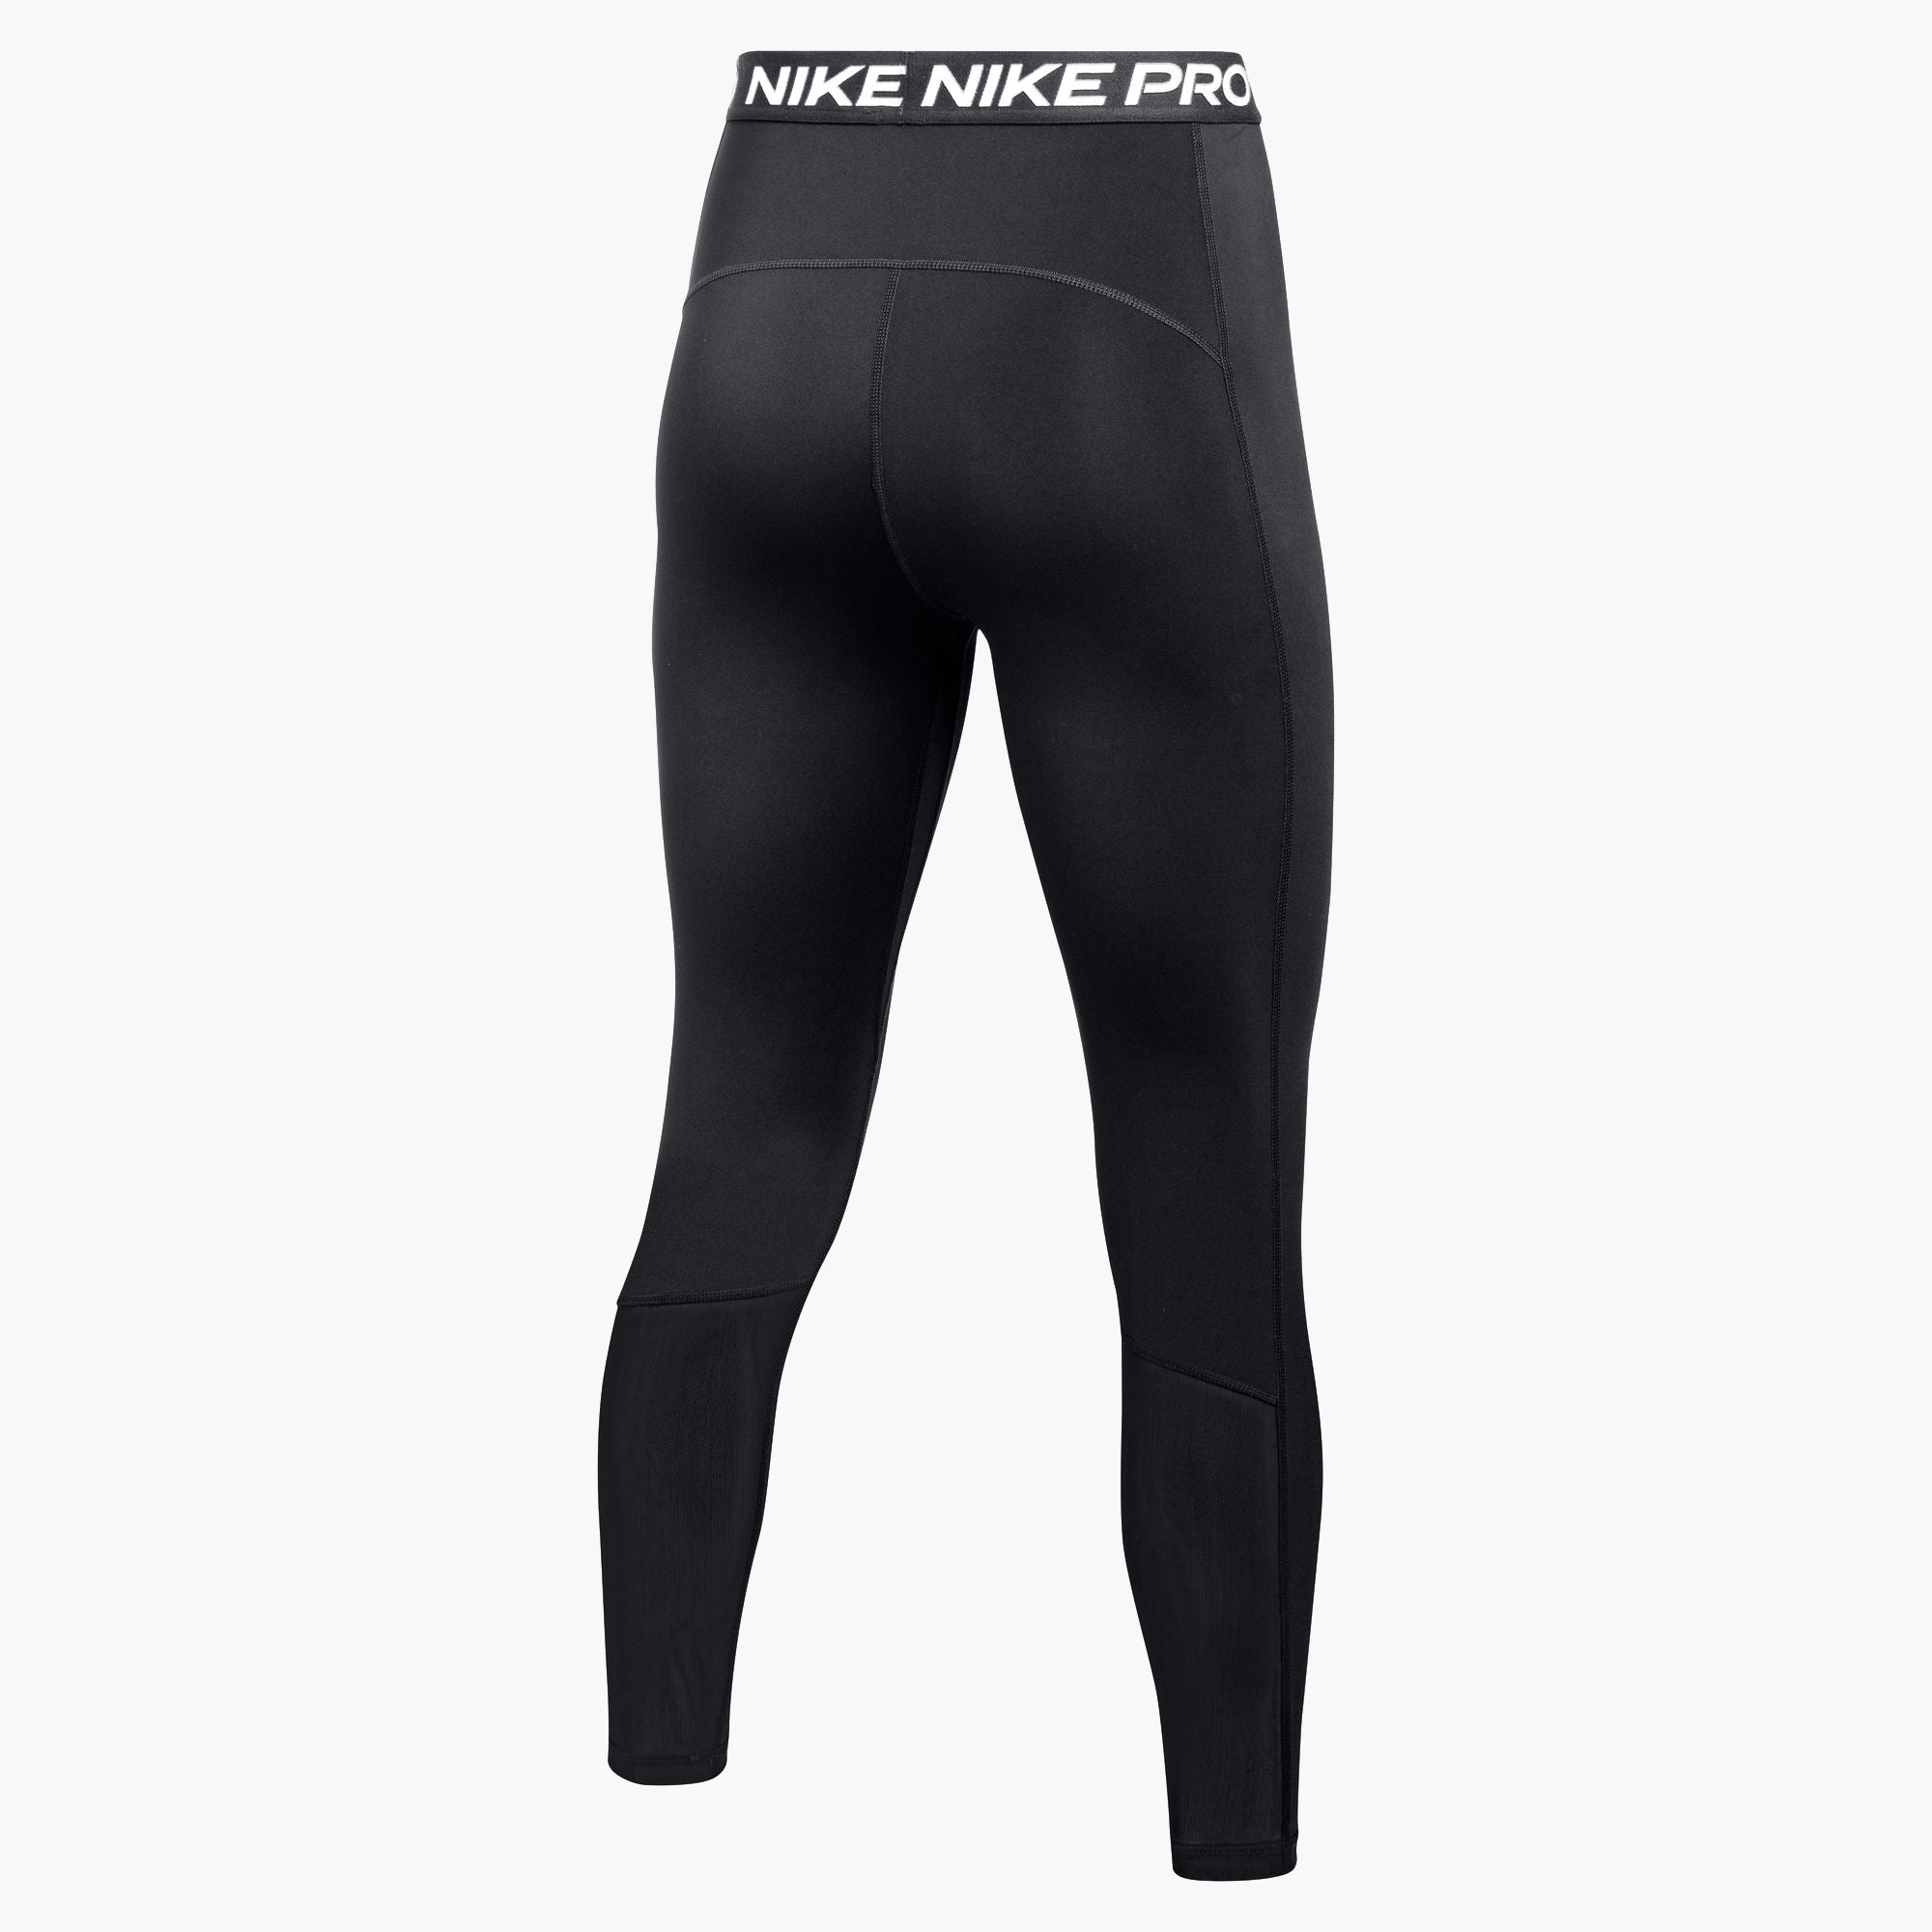 NIKE Nike NP 365 7/8 HI RISE - Women's leggings medium olive/black